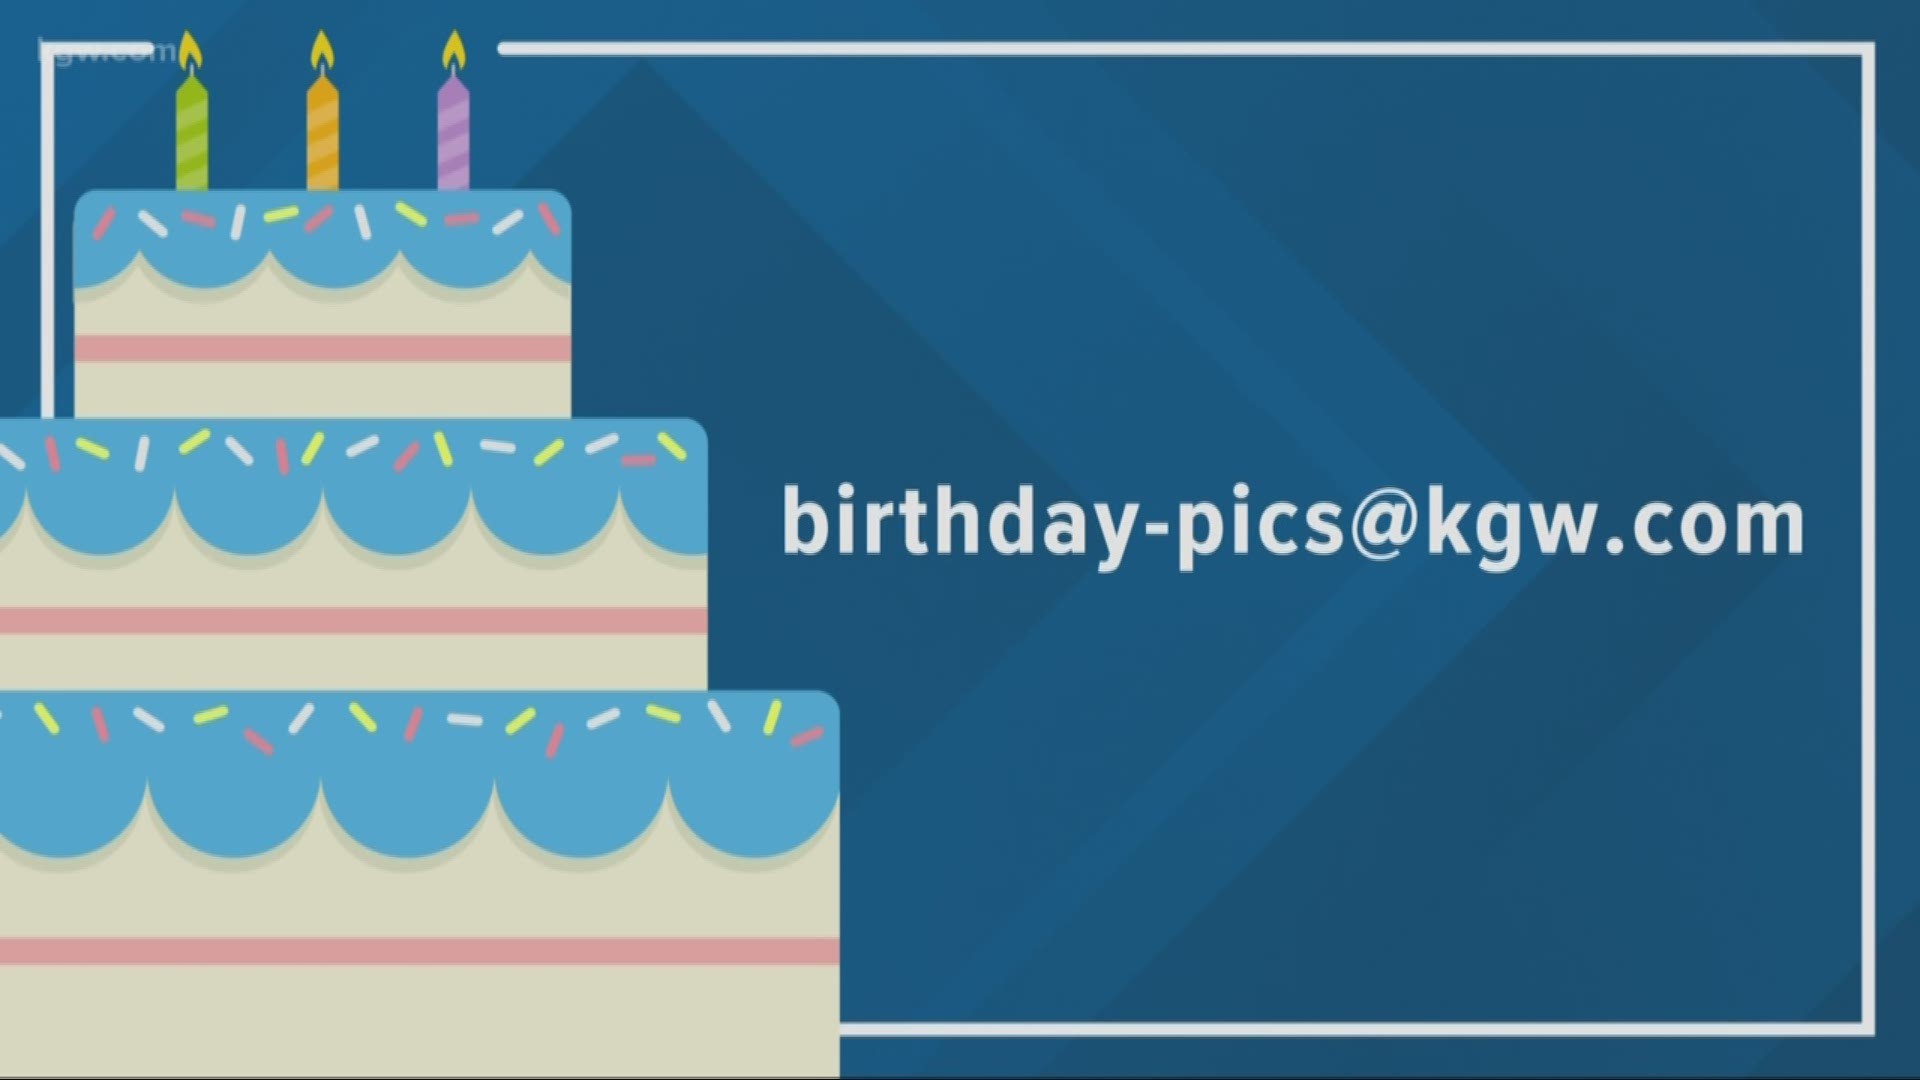 KGW viewer birthdays: 11-19-18